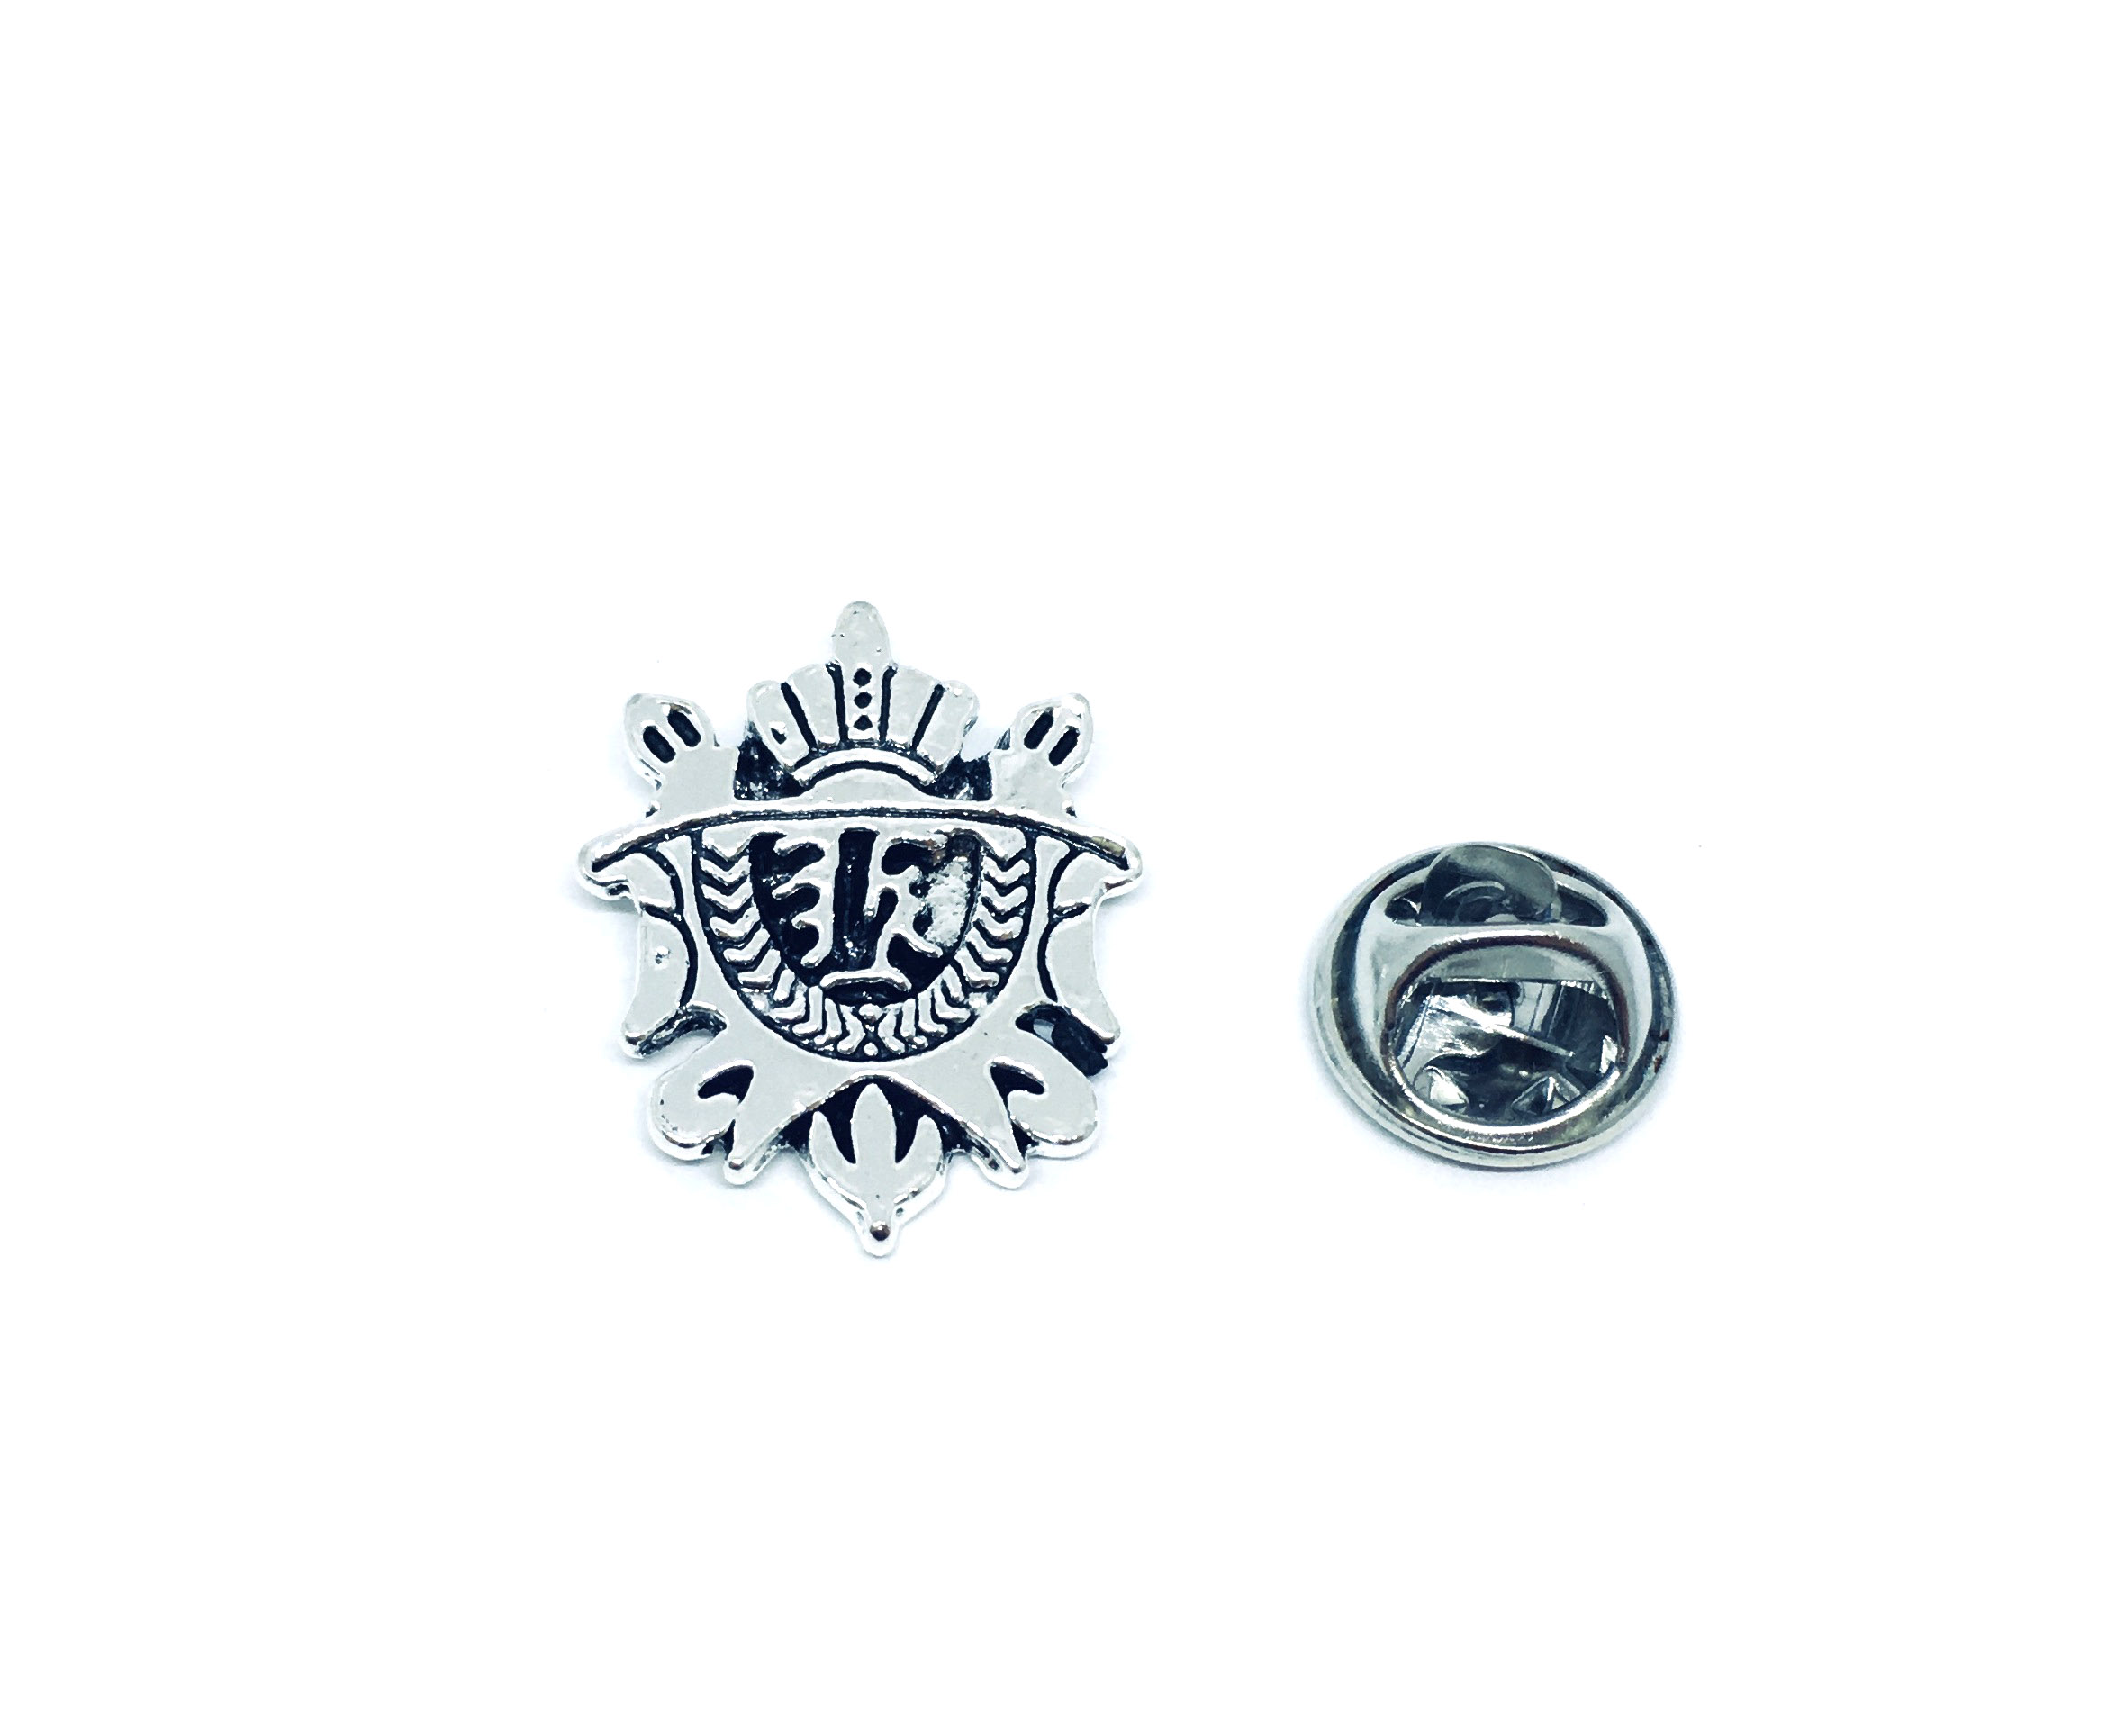 Silver Shield Military Pin Badge